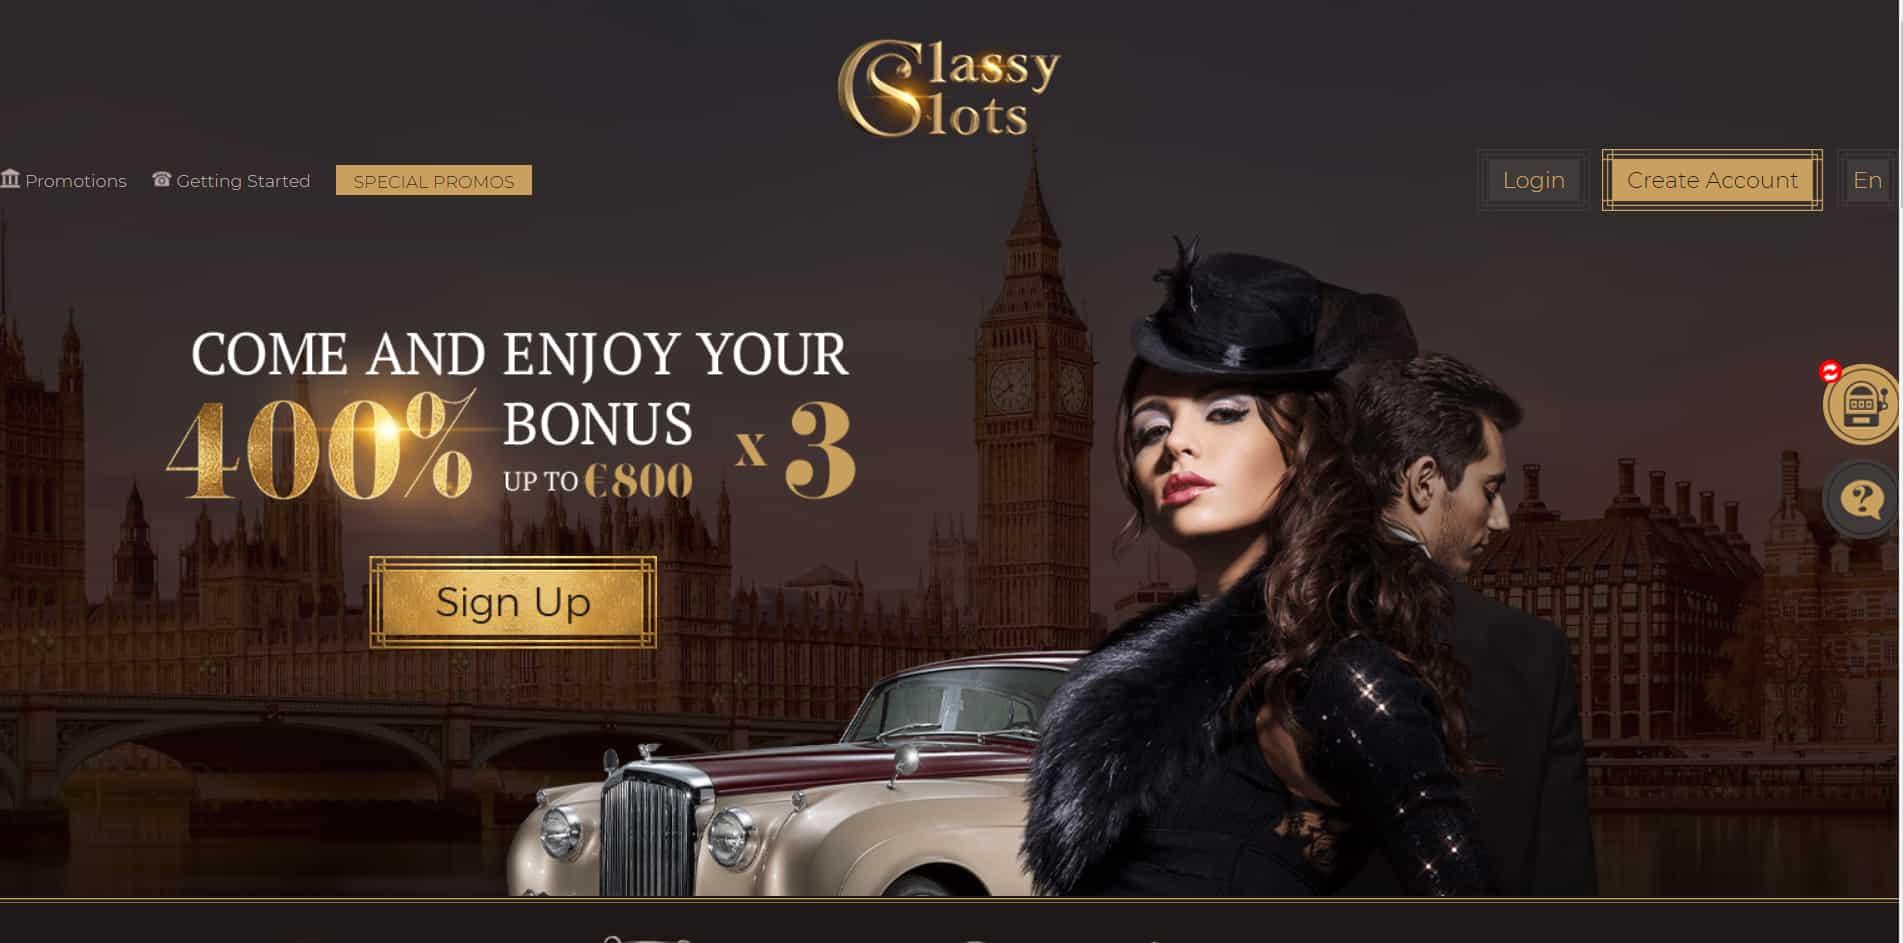 Classy Slots casino homepage